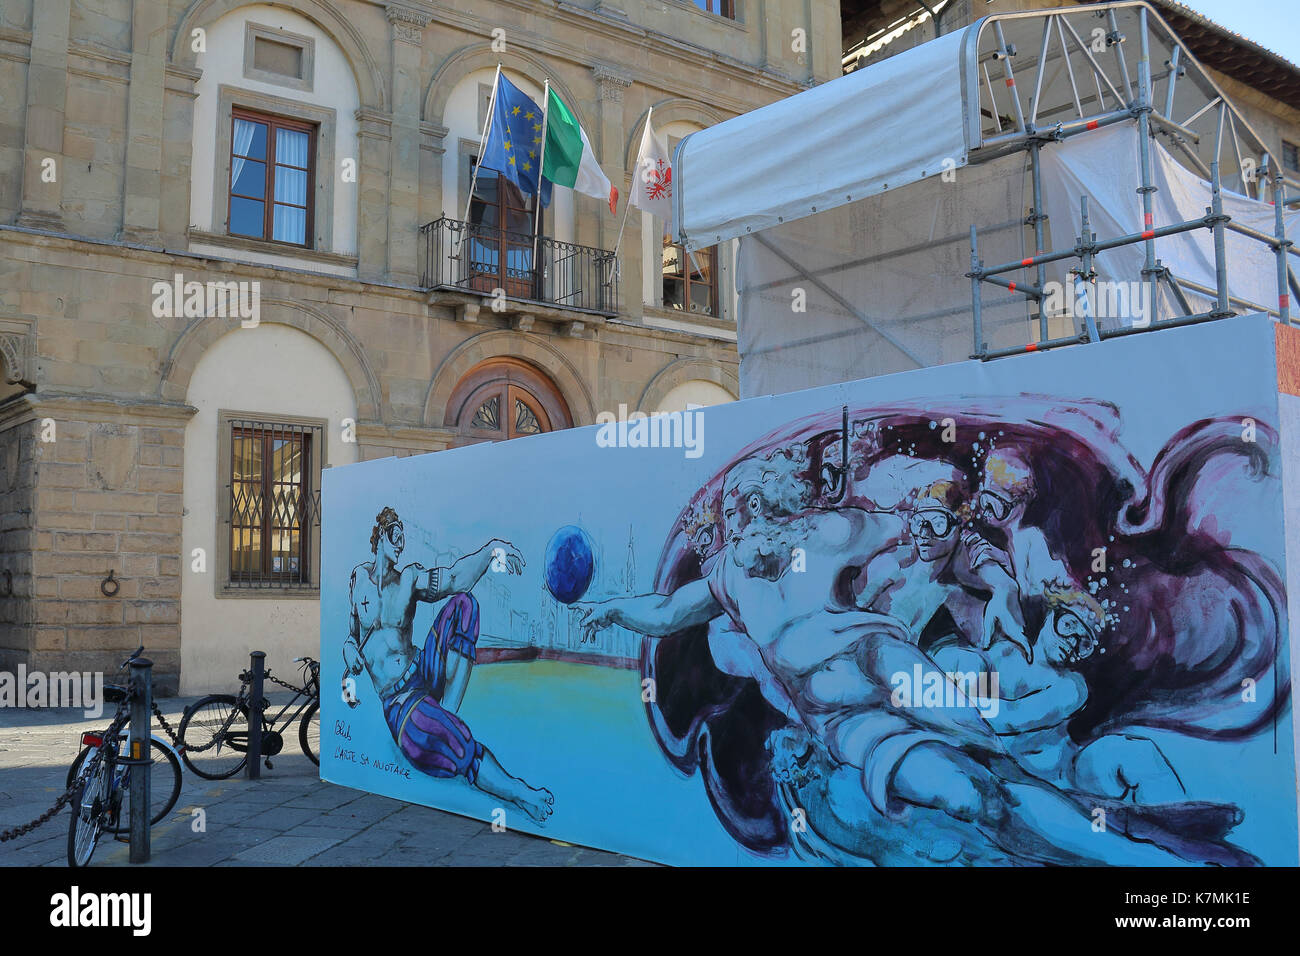 Street Art von Florenz Künstler Blub, auf Horten. Florenz, Italien. Stockfoto